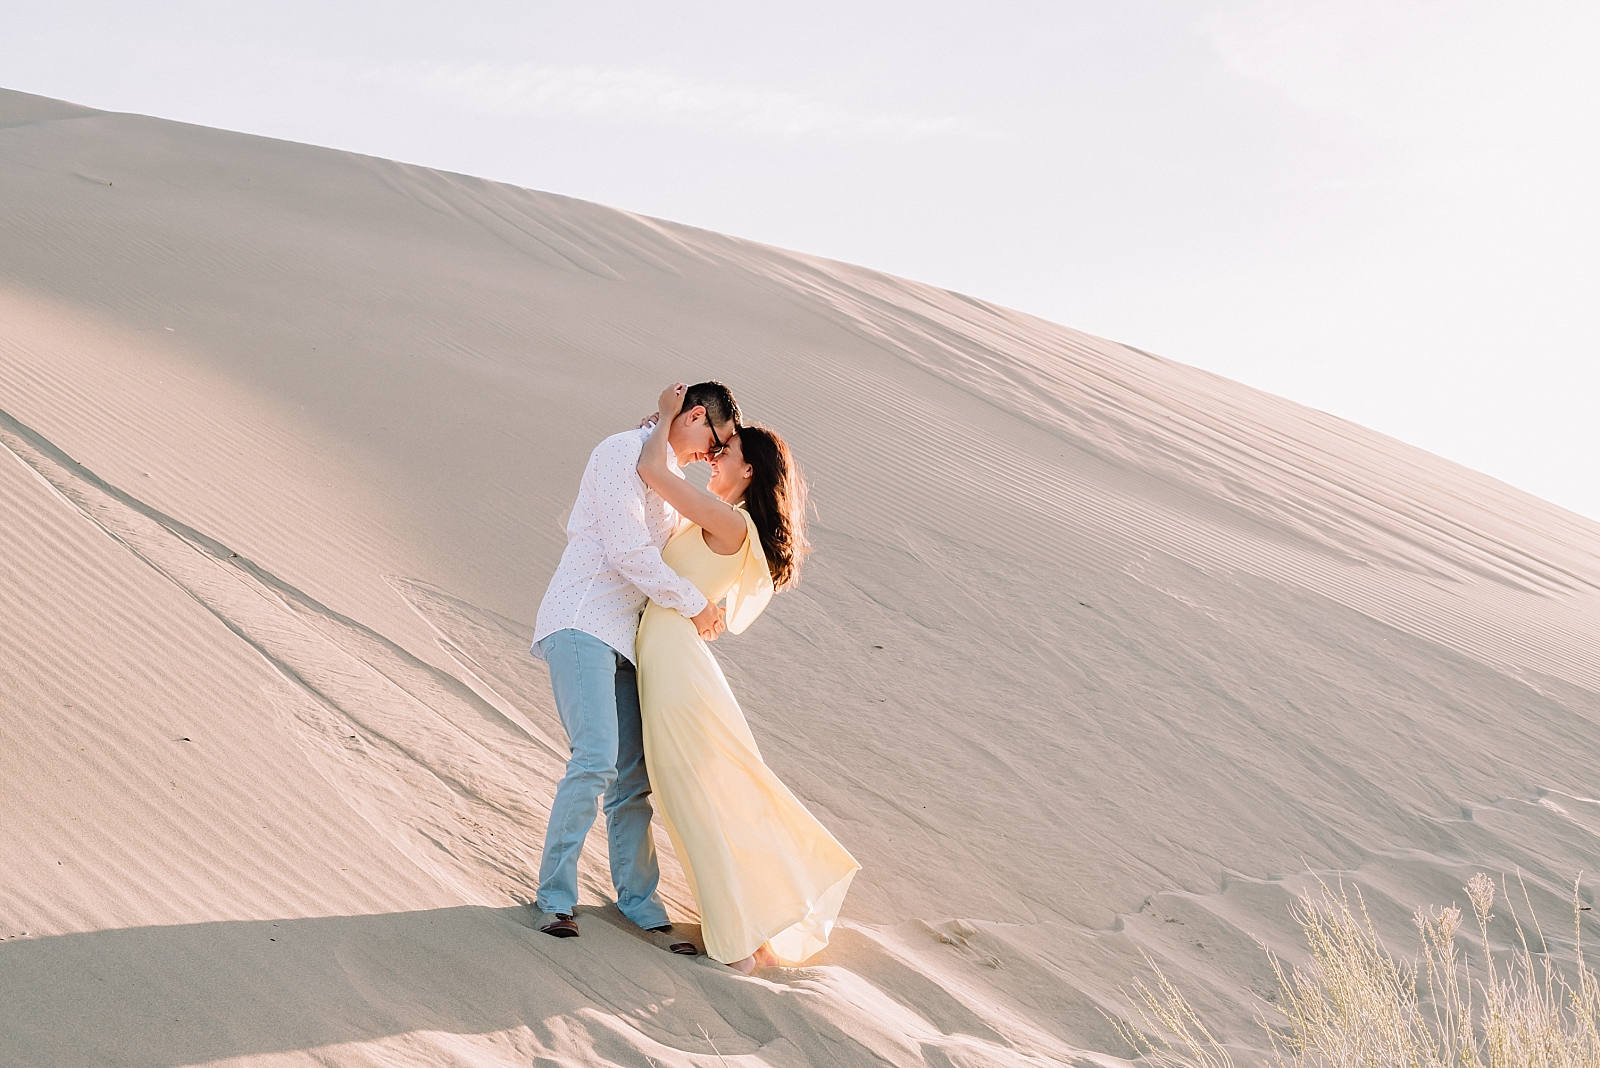 romantic couple sand dune idaho engagements